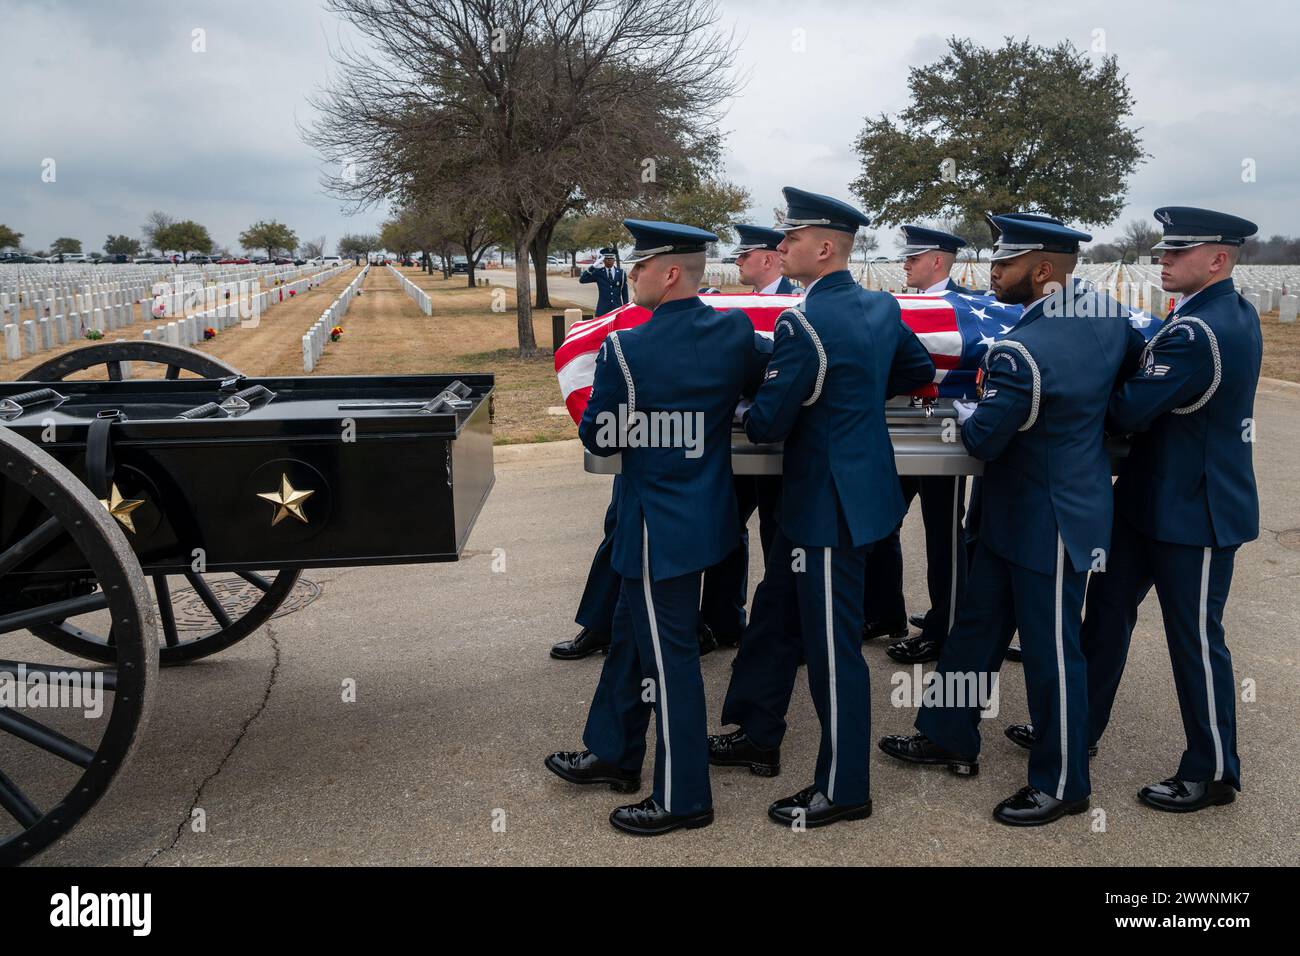 L'équipe de porteur de chapeaux de la Garde d'honneur de l'US Air Force transporte le cercueil du cinquième Sgt maître en chef de l'Air Force Robert D. Gaylor lors de son inhumation, le 10 février 2024, au cimetière national de Fort Sam Houston, au Texas. Gaylor a défendu l'éducation militaire professionnelle de l'Armée de l'Air à la fin des années 60 et 70 avant d'être promu au grade de Sgt-maître en chef de l'Armée de l'Air en 1977. Il a continué d'éduquer et d'inspirer les militaires pendant plus de 40 ans après sa retraite du service militaire. Armée de l'air Banque D'Images